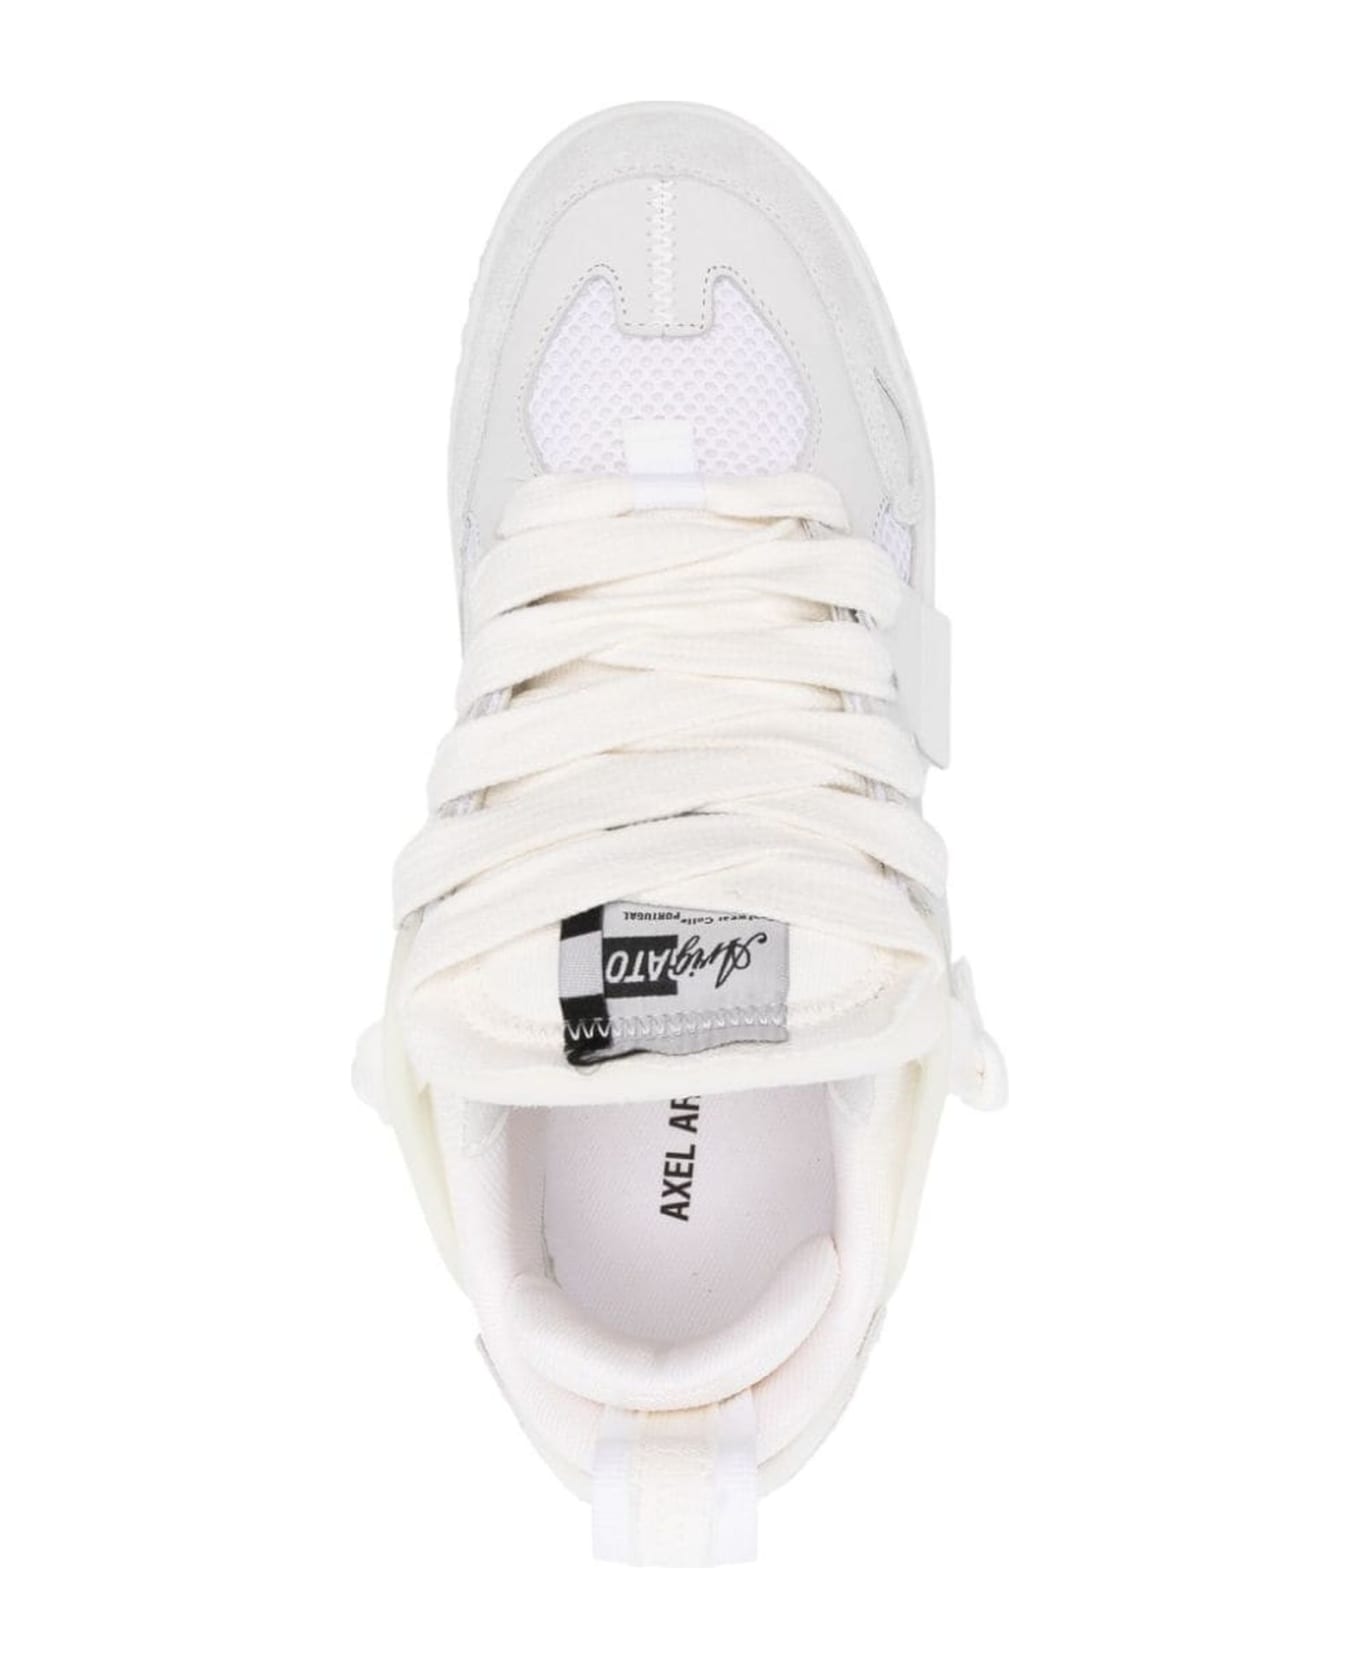 Axel Arigato Sneakers White - White